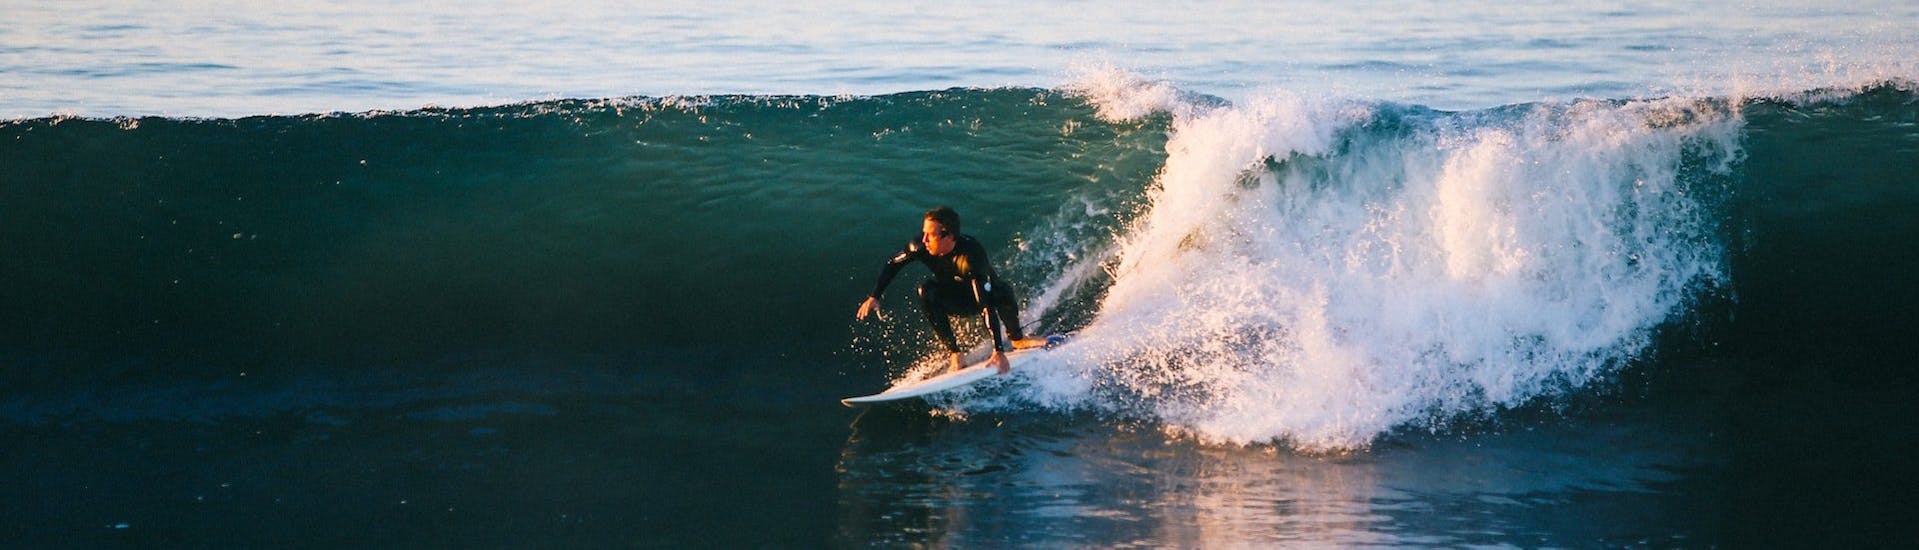 Cours privé de surf à Sintra (dès 8 ans) pour Tous niveaux.